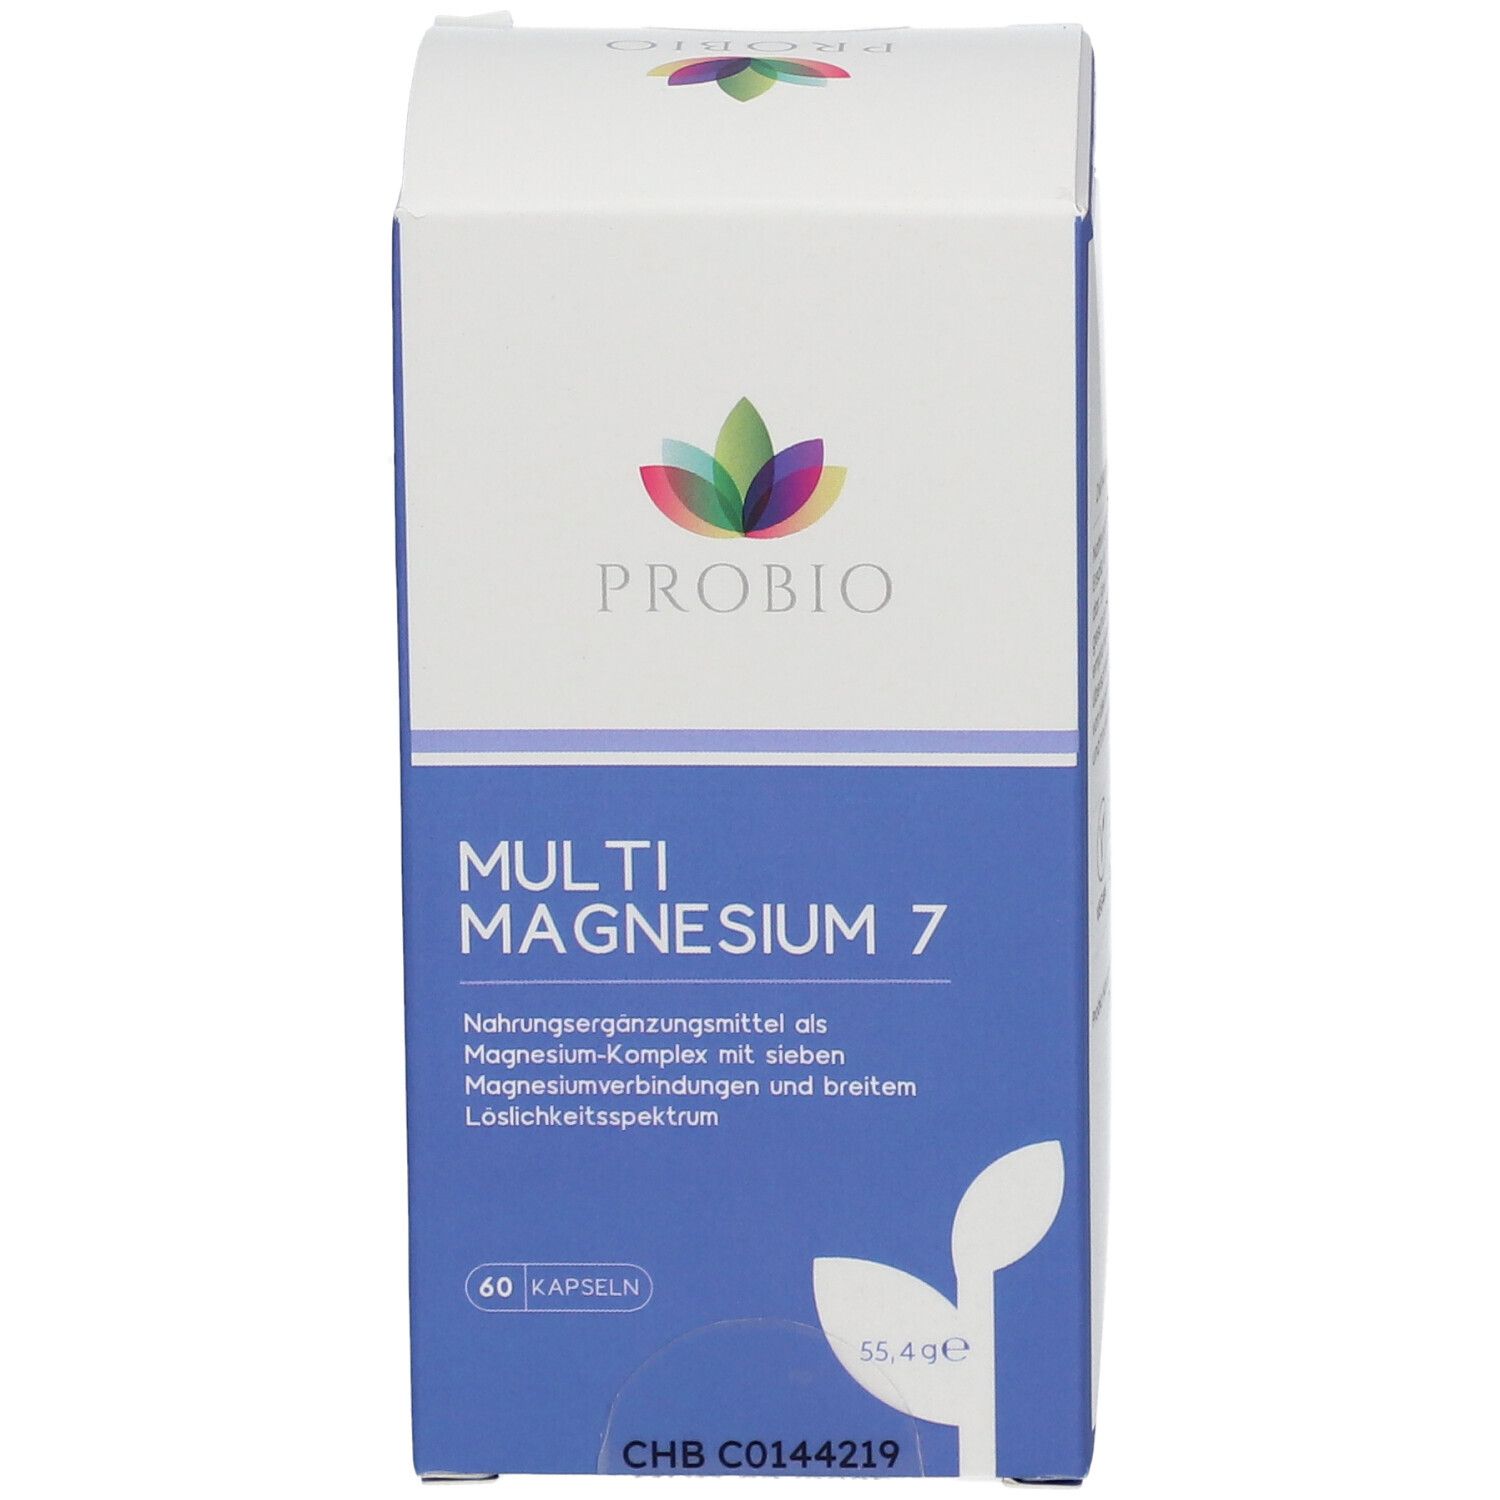 PROBIO Multi Magnesium 7